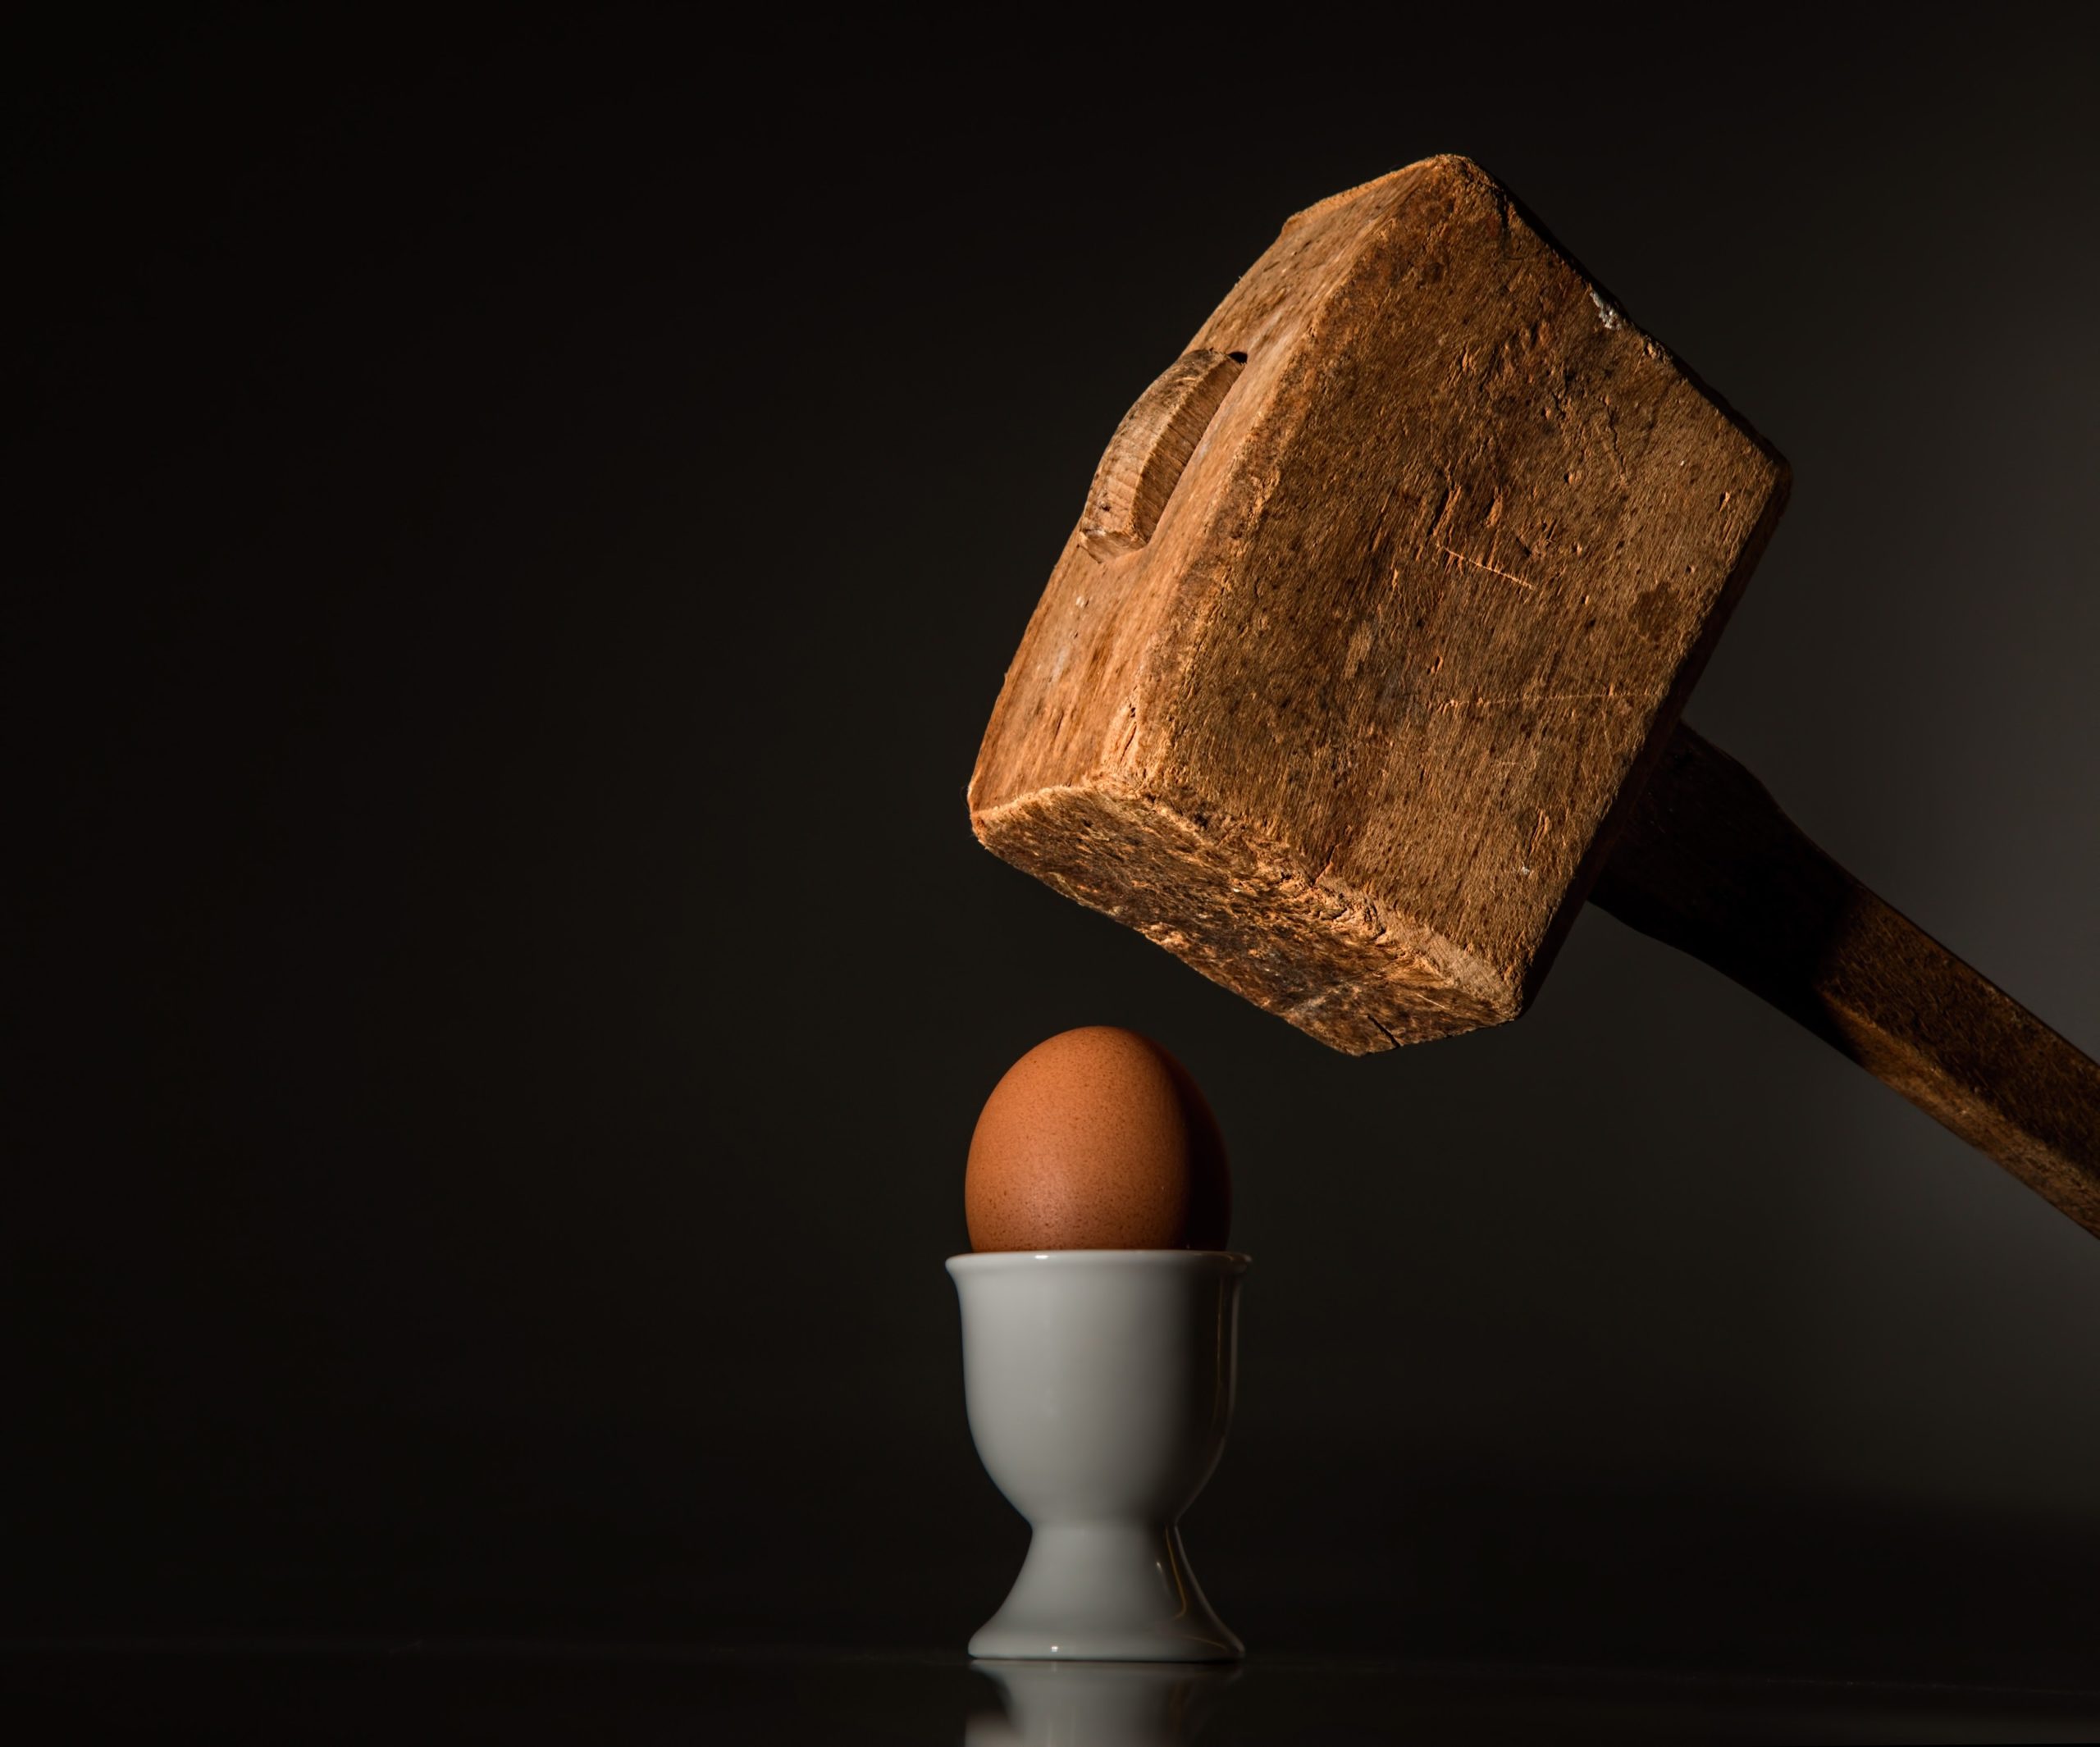 Ein Hammer schlägt auf ein Ei